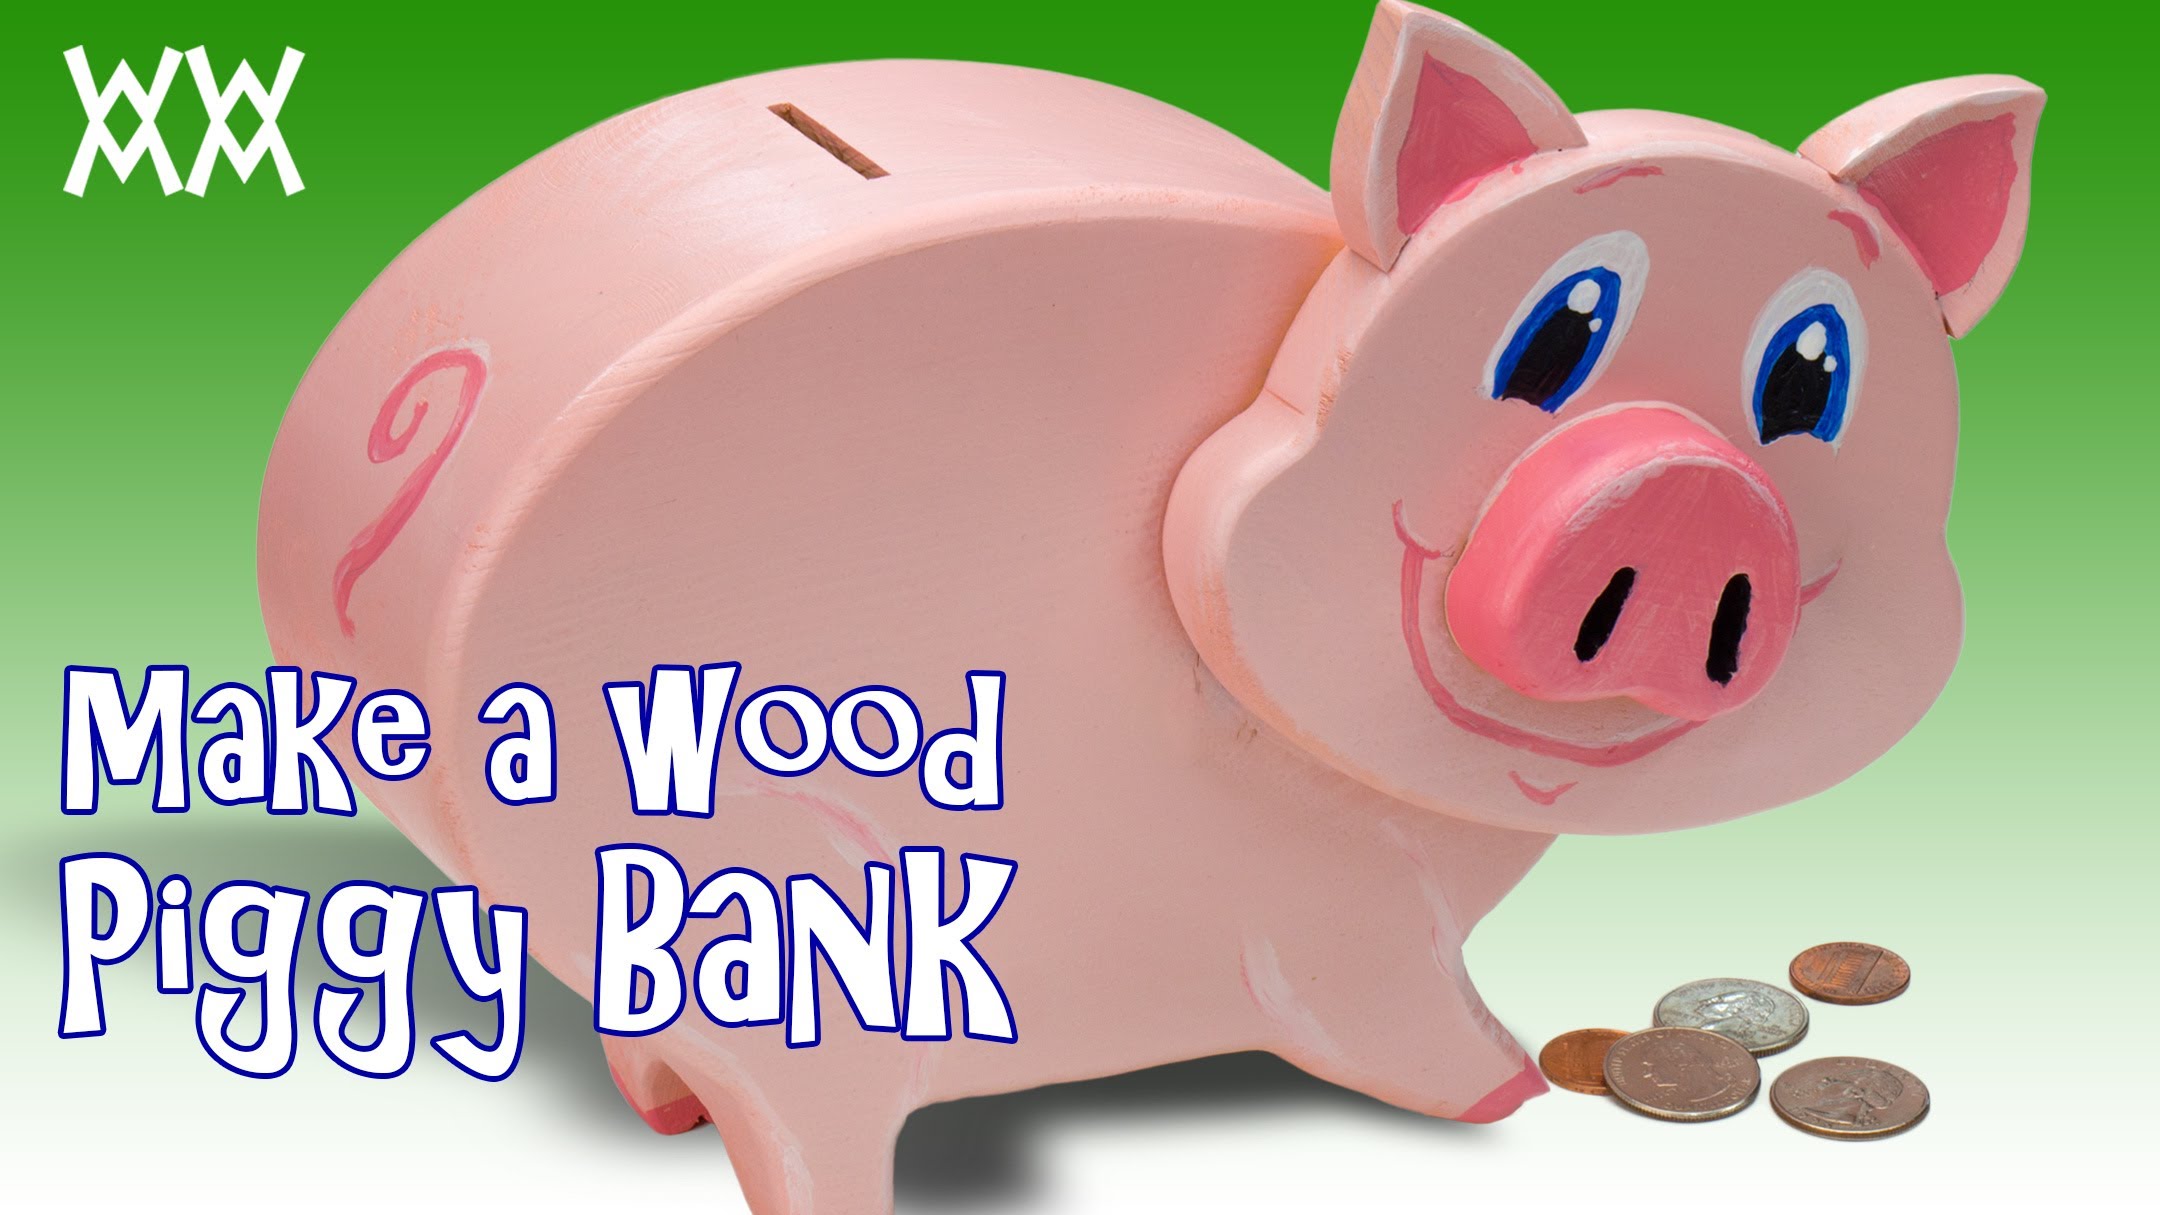 Играть пигги банк. Пигги банк. Wood Piggy Bank. Хрюшка с деньгами. Свинья с деньгами.